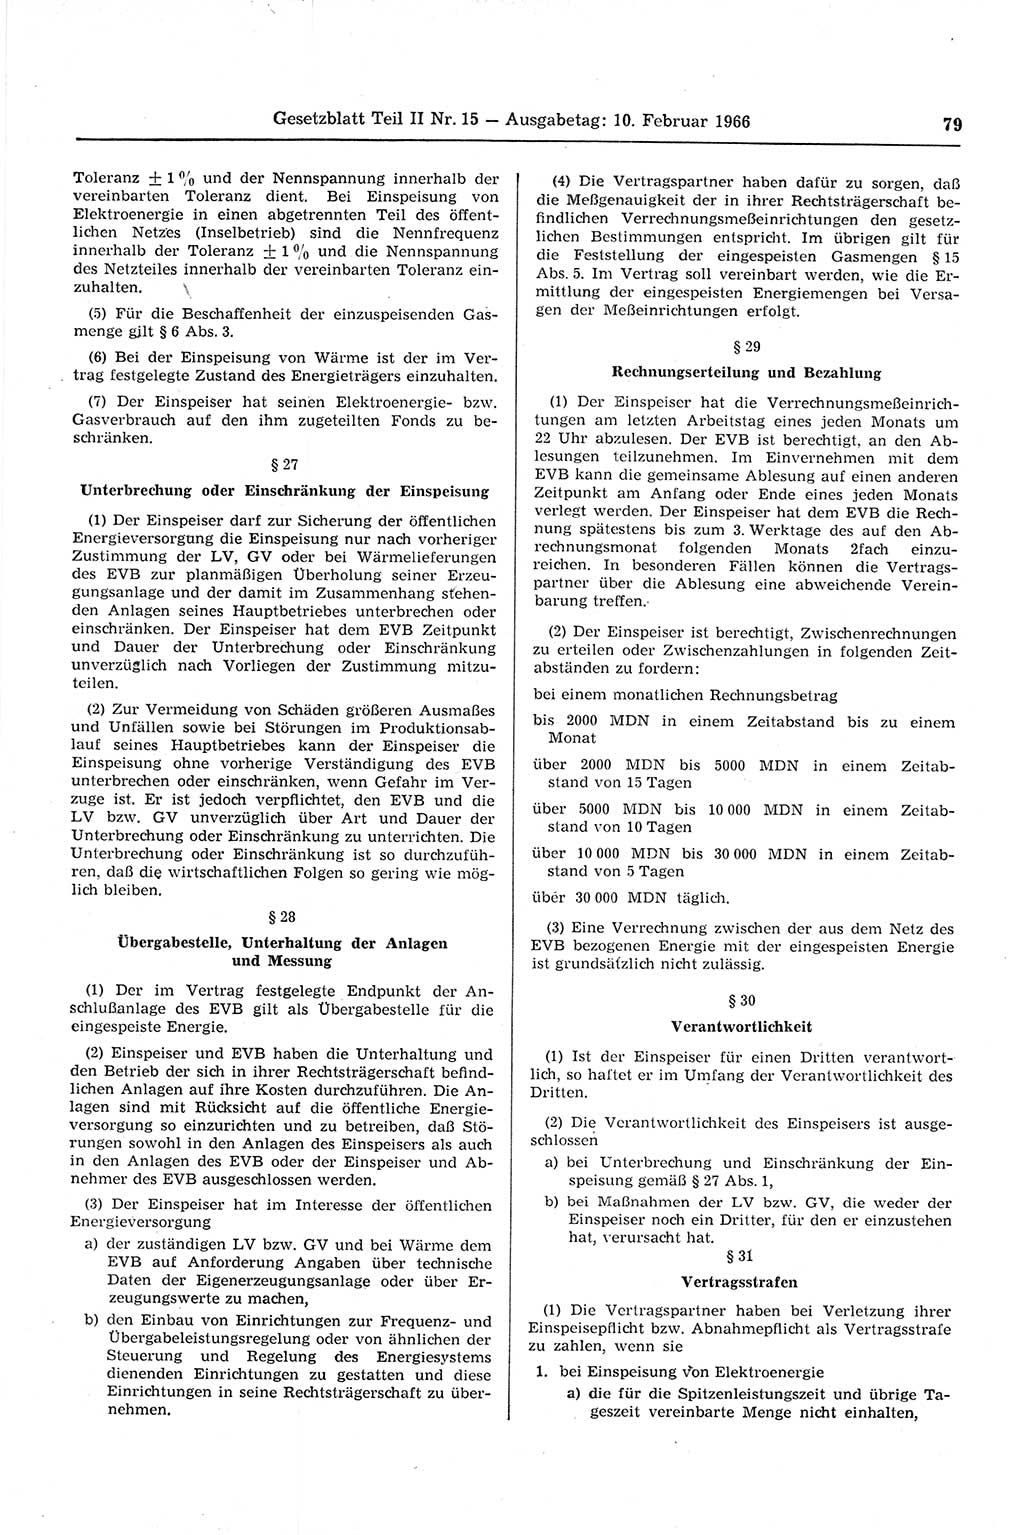 Gesetzblatt (GBl.) der Deutschen Demokratischen Republik (DDR) Teil ⅠⅠ 1966, Seite 79 (GBl. DDR ⅠⅠ 1966, S. 79)